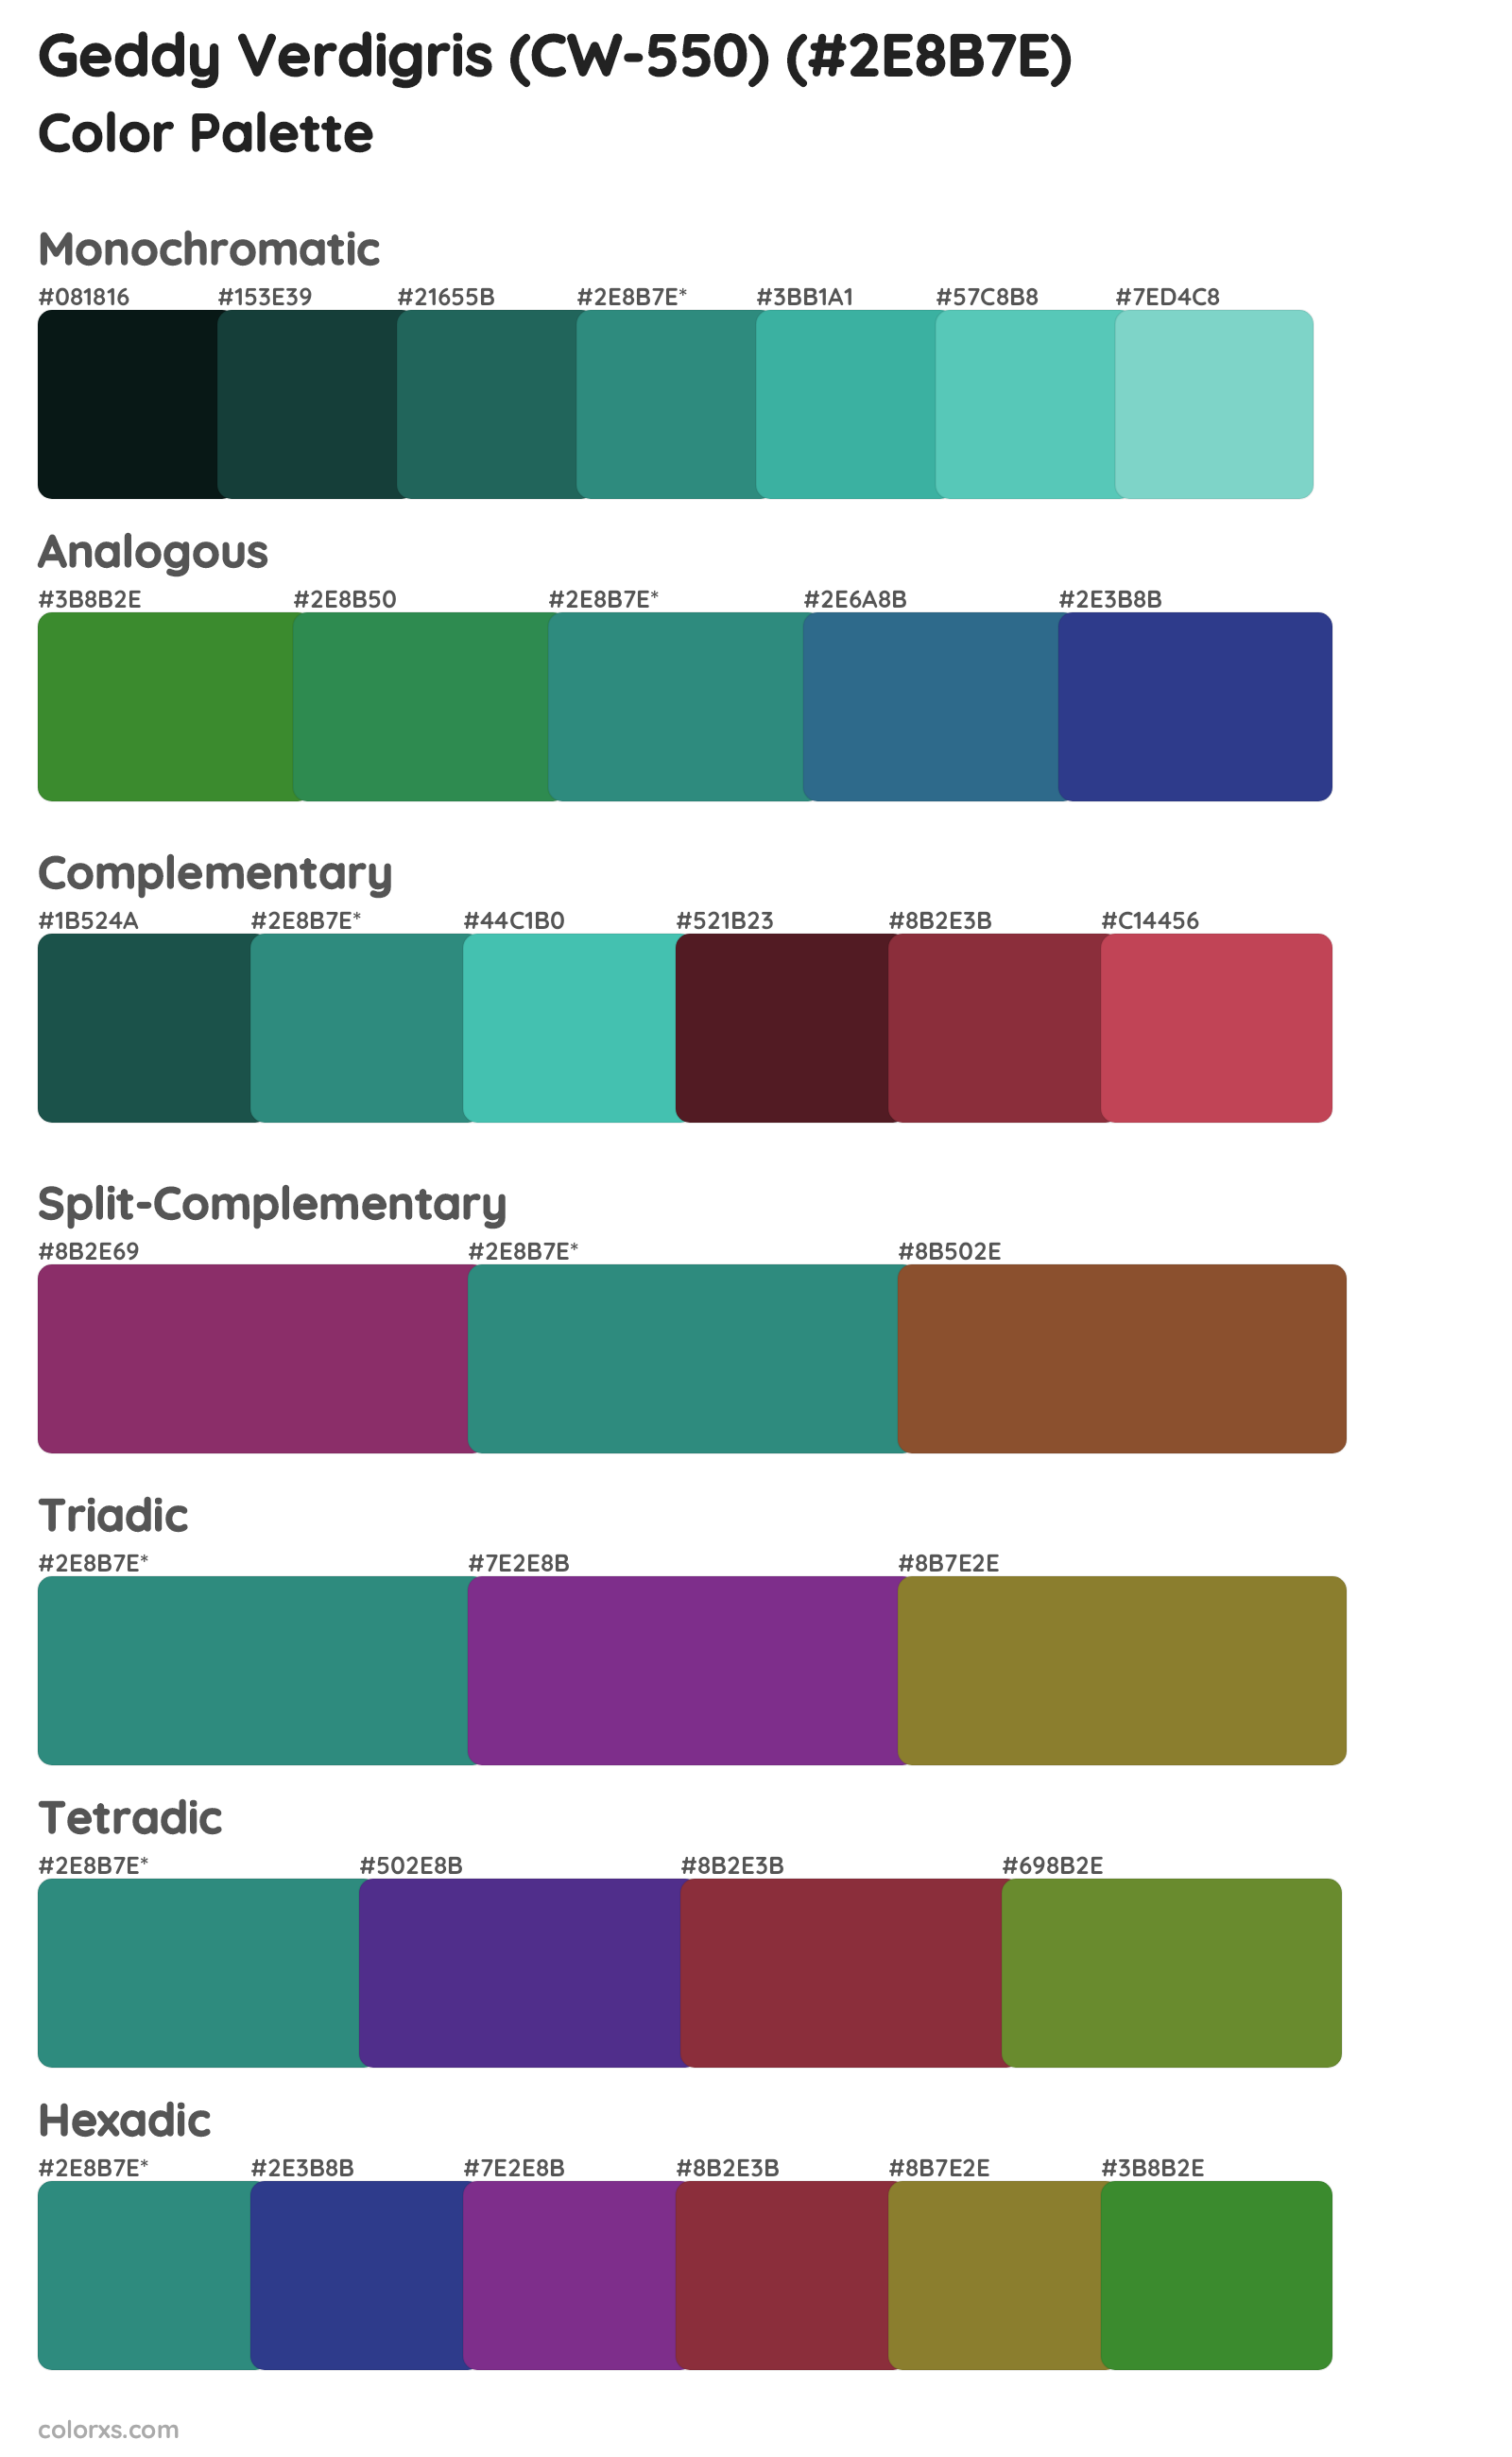 Geddy Verdigris (CW-550) Color Scheme Palettes